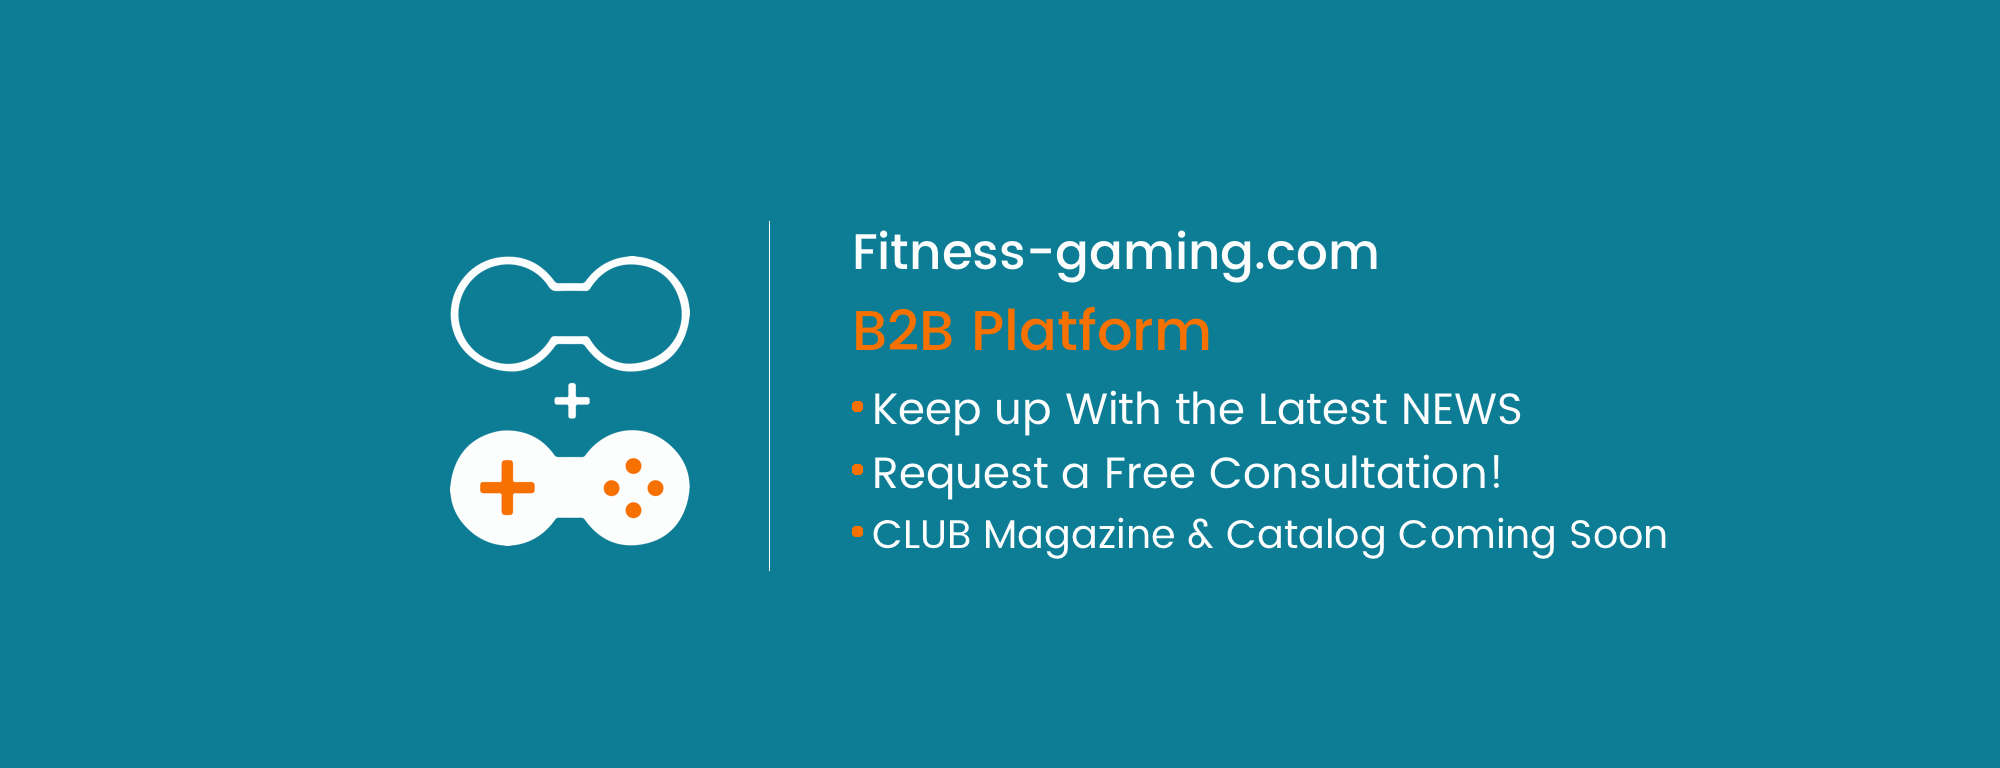 Fitness-gaming.com